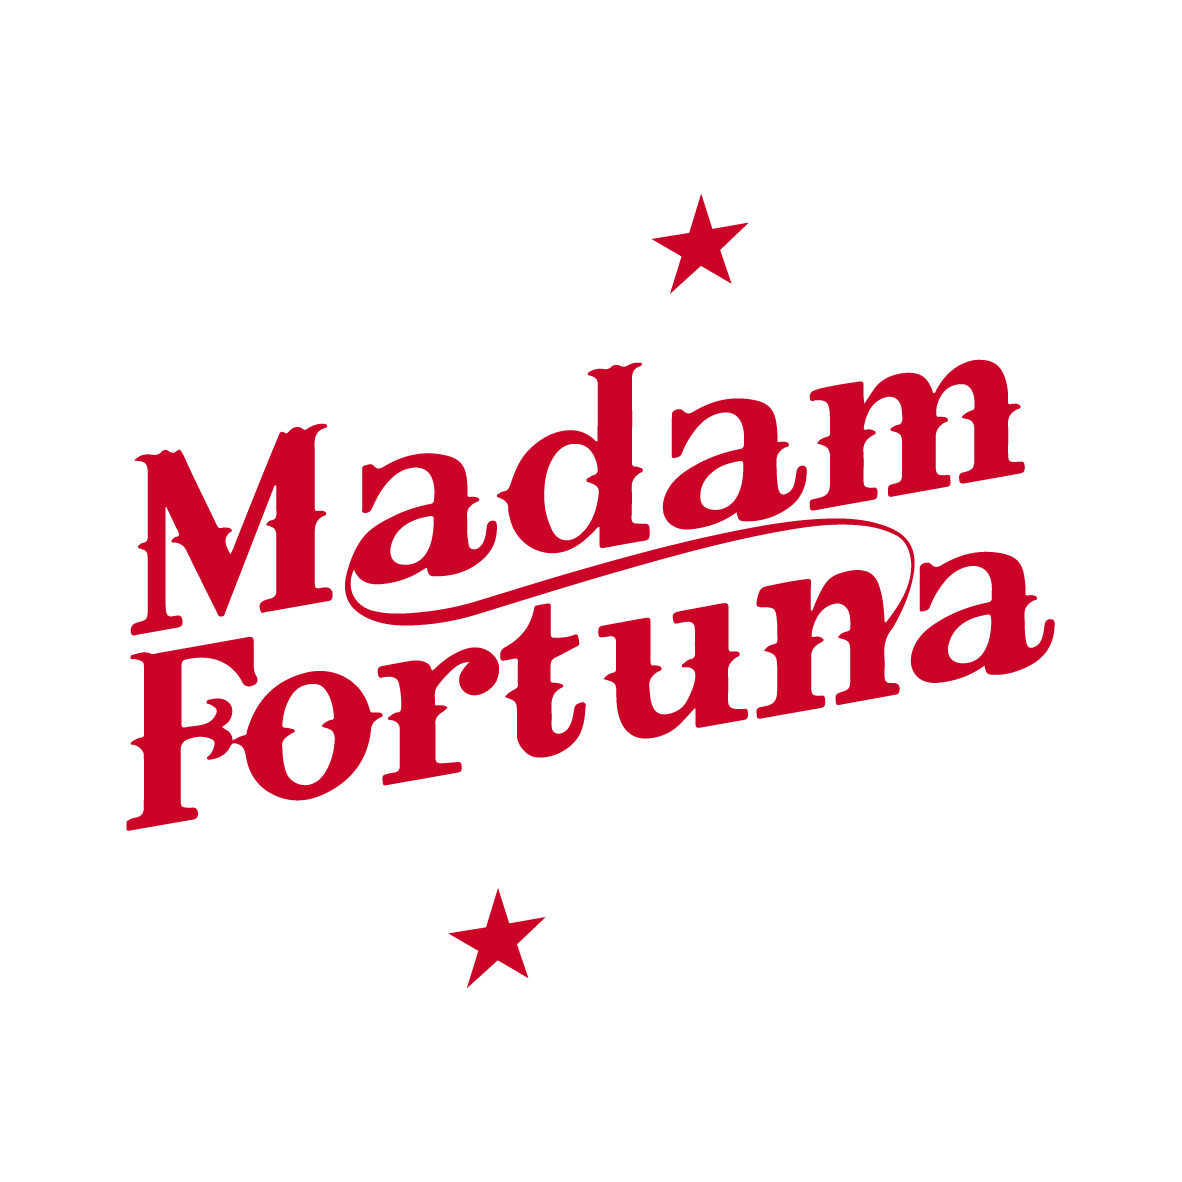 Madam Fortuna